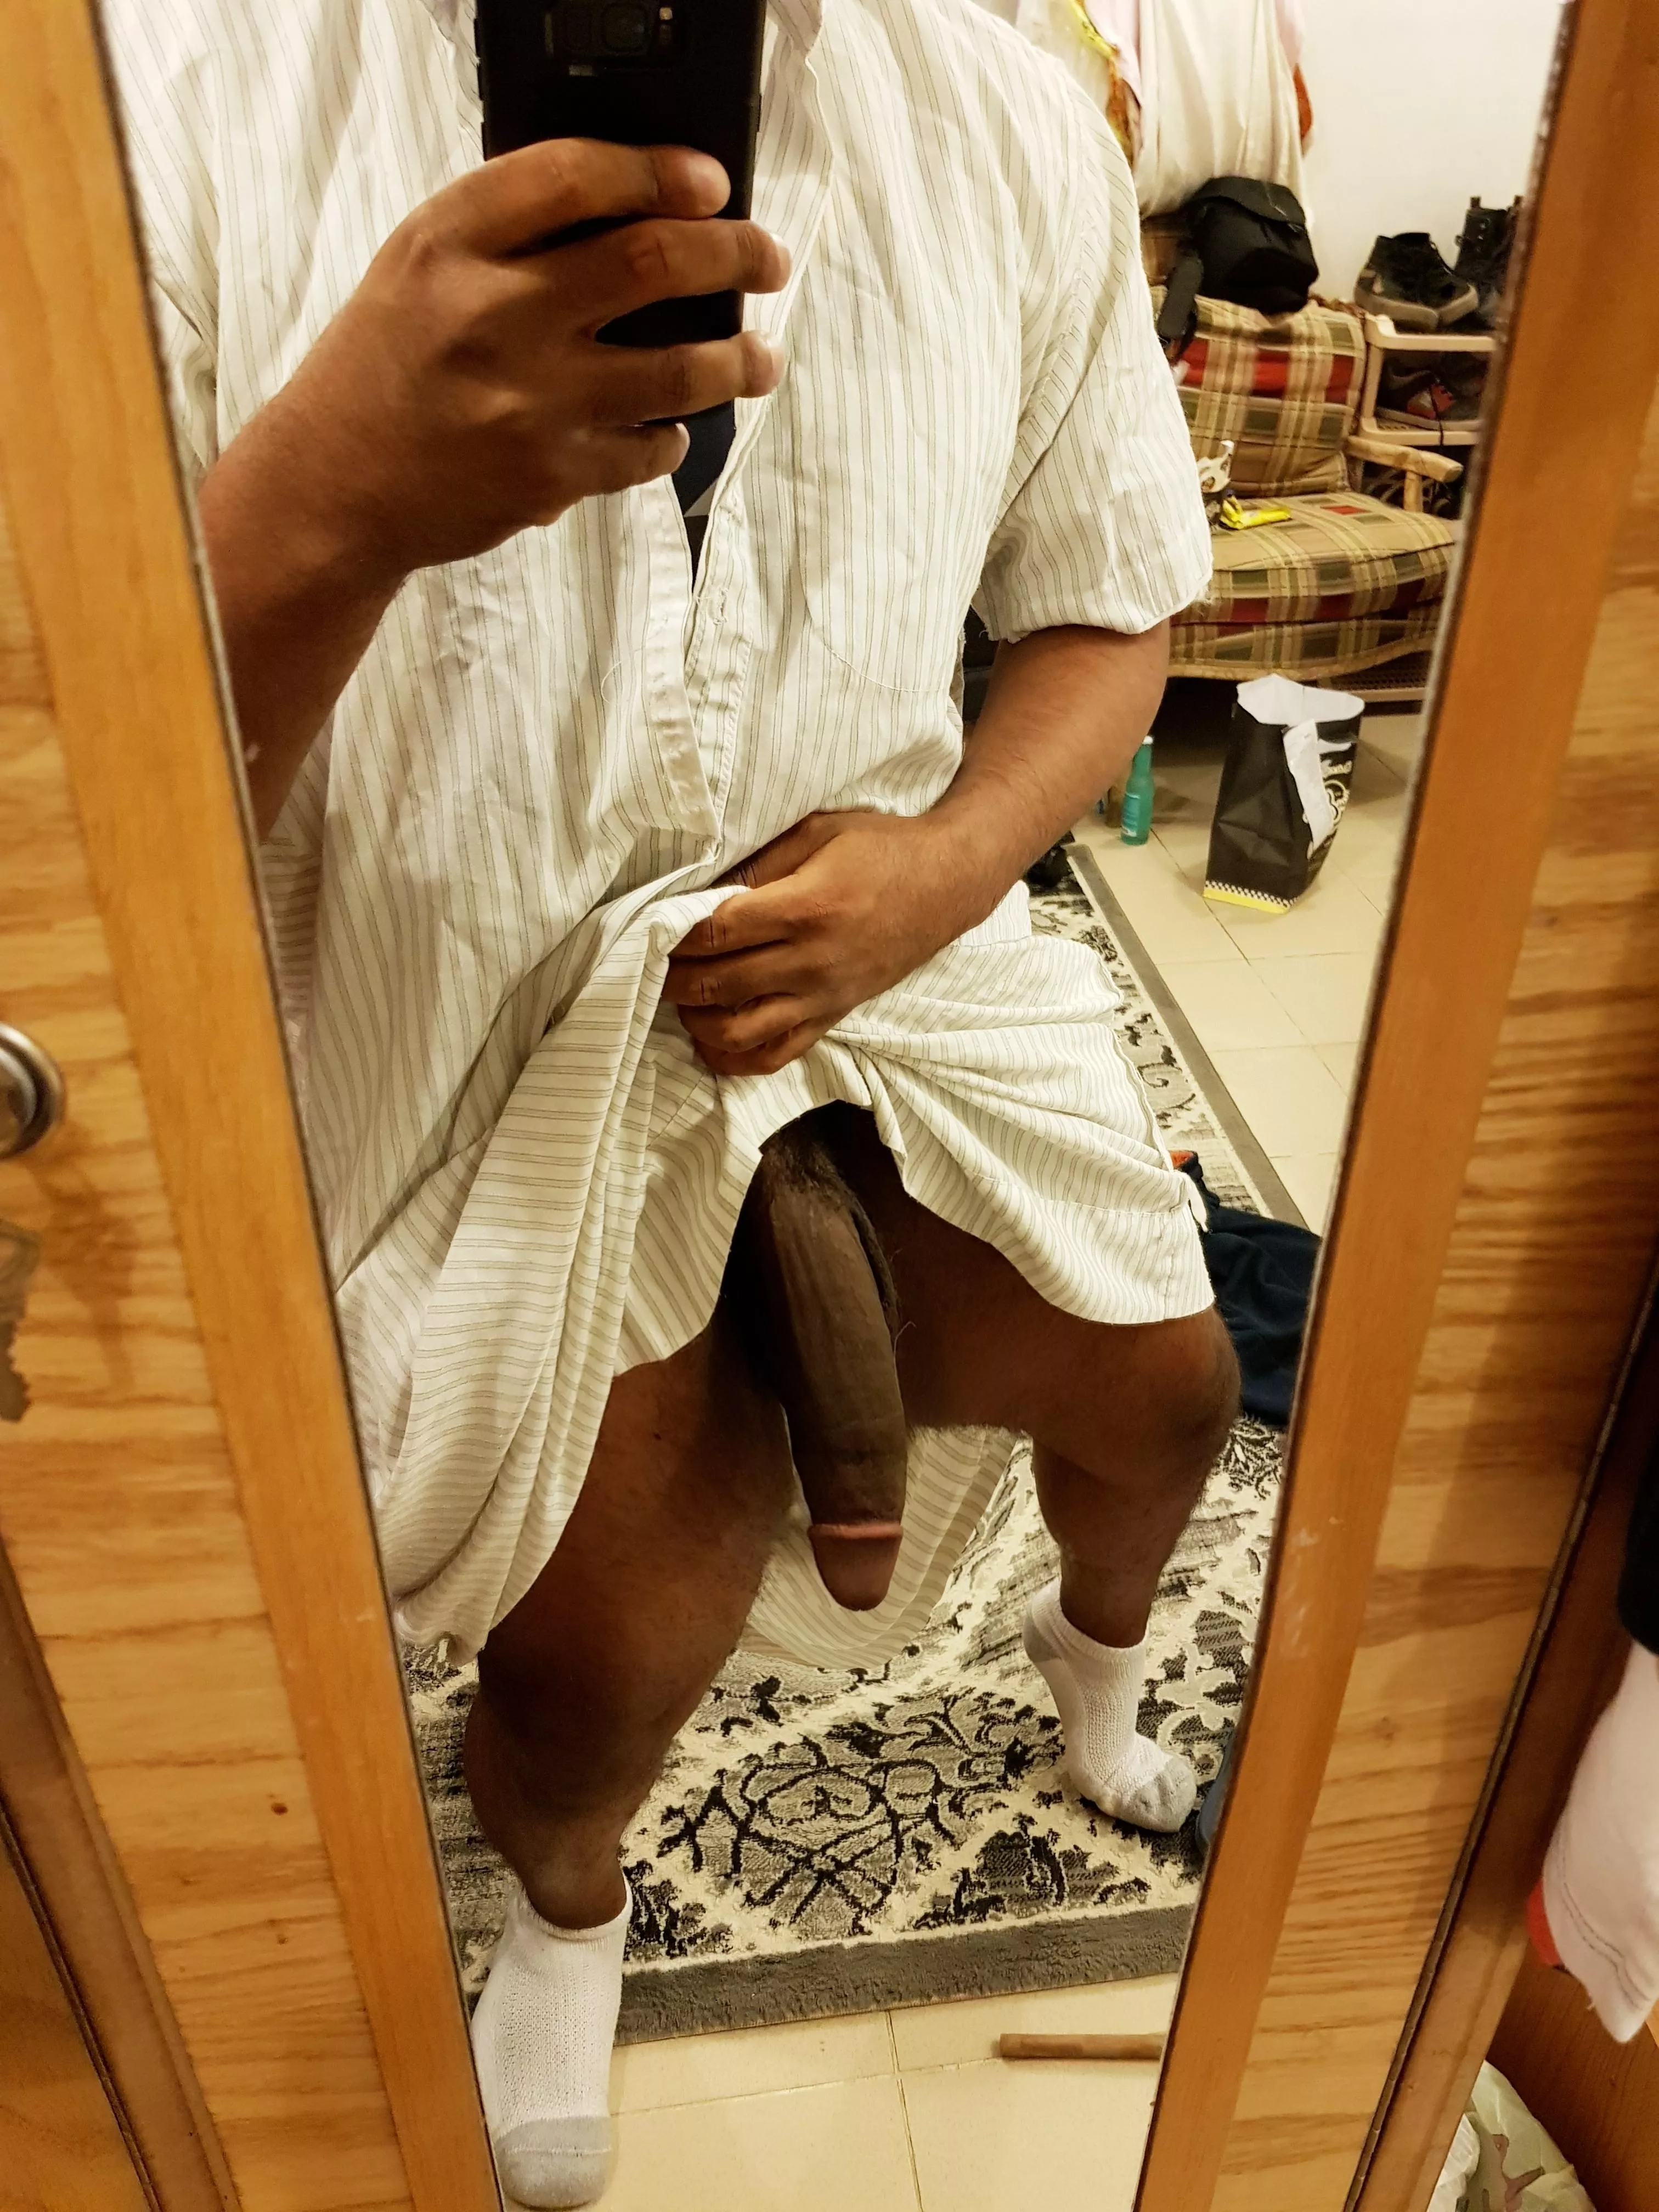 Arab Male Nude